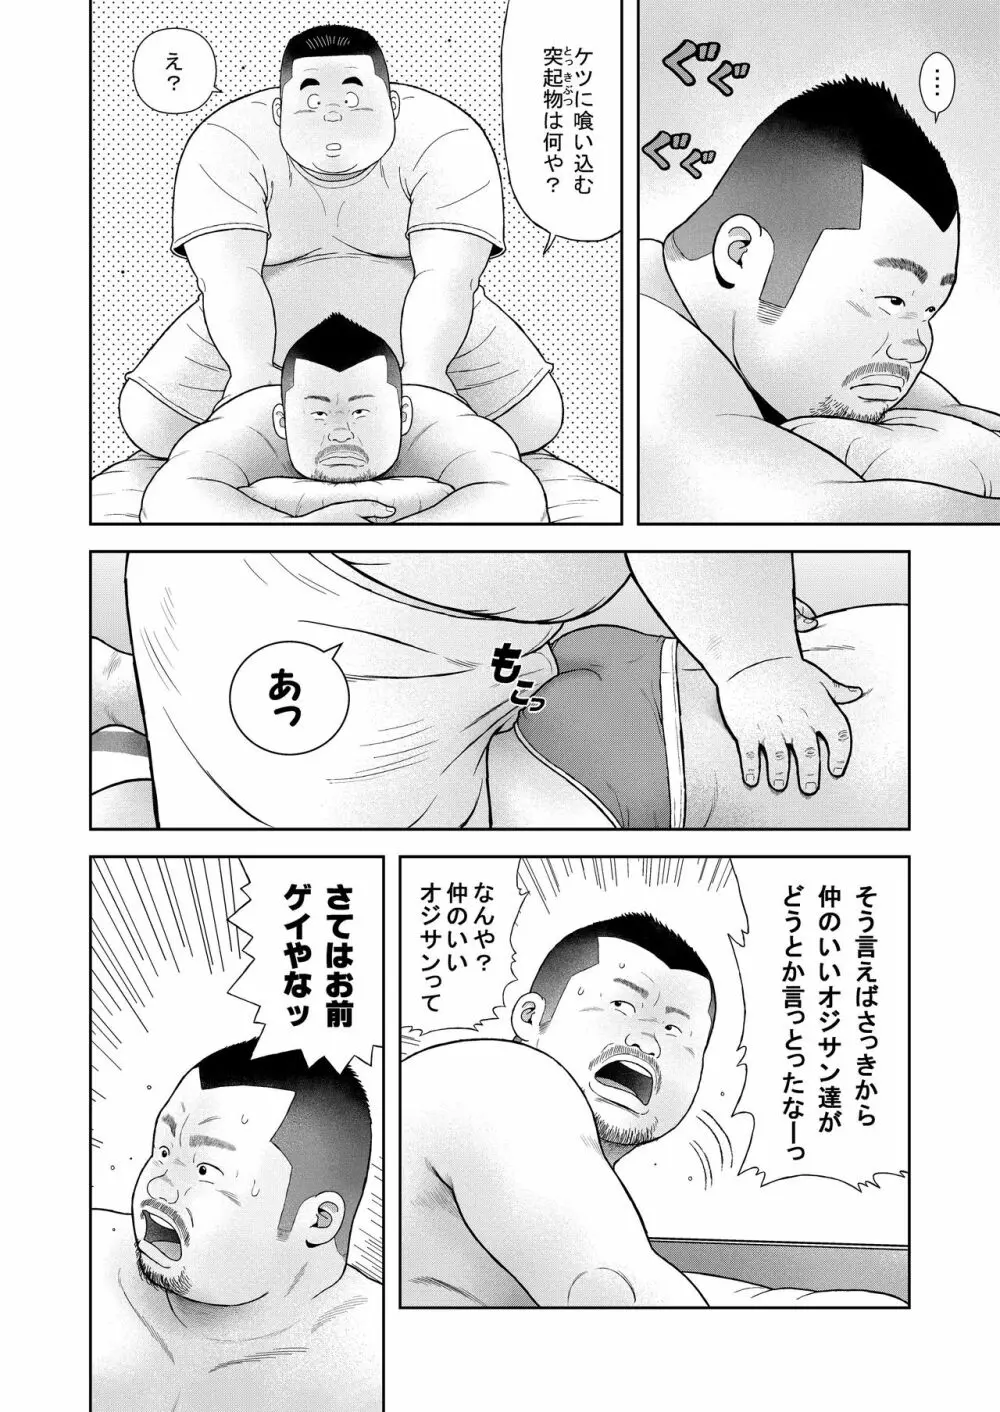 くの湯 四発め 芸人の性 - page10